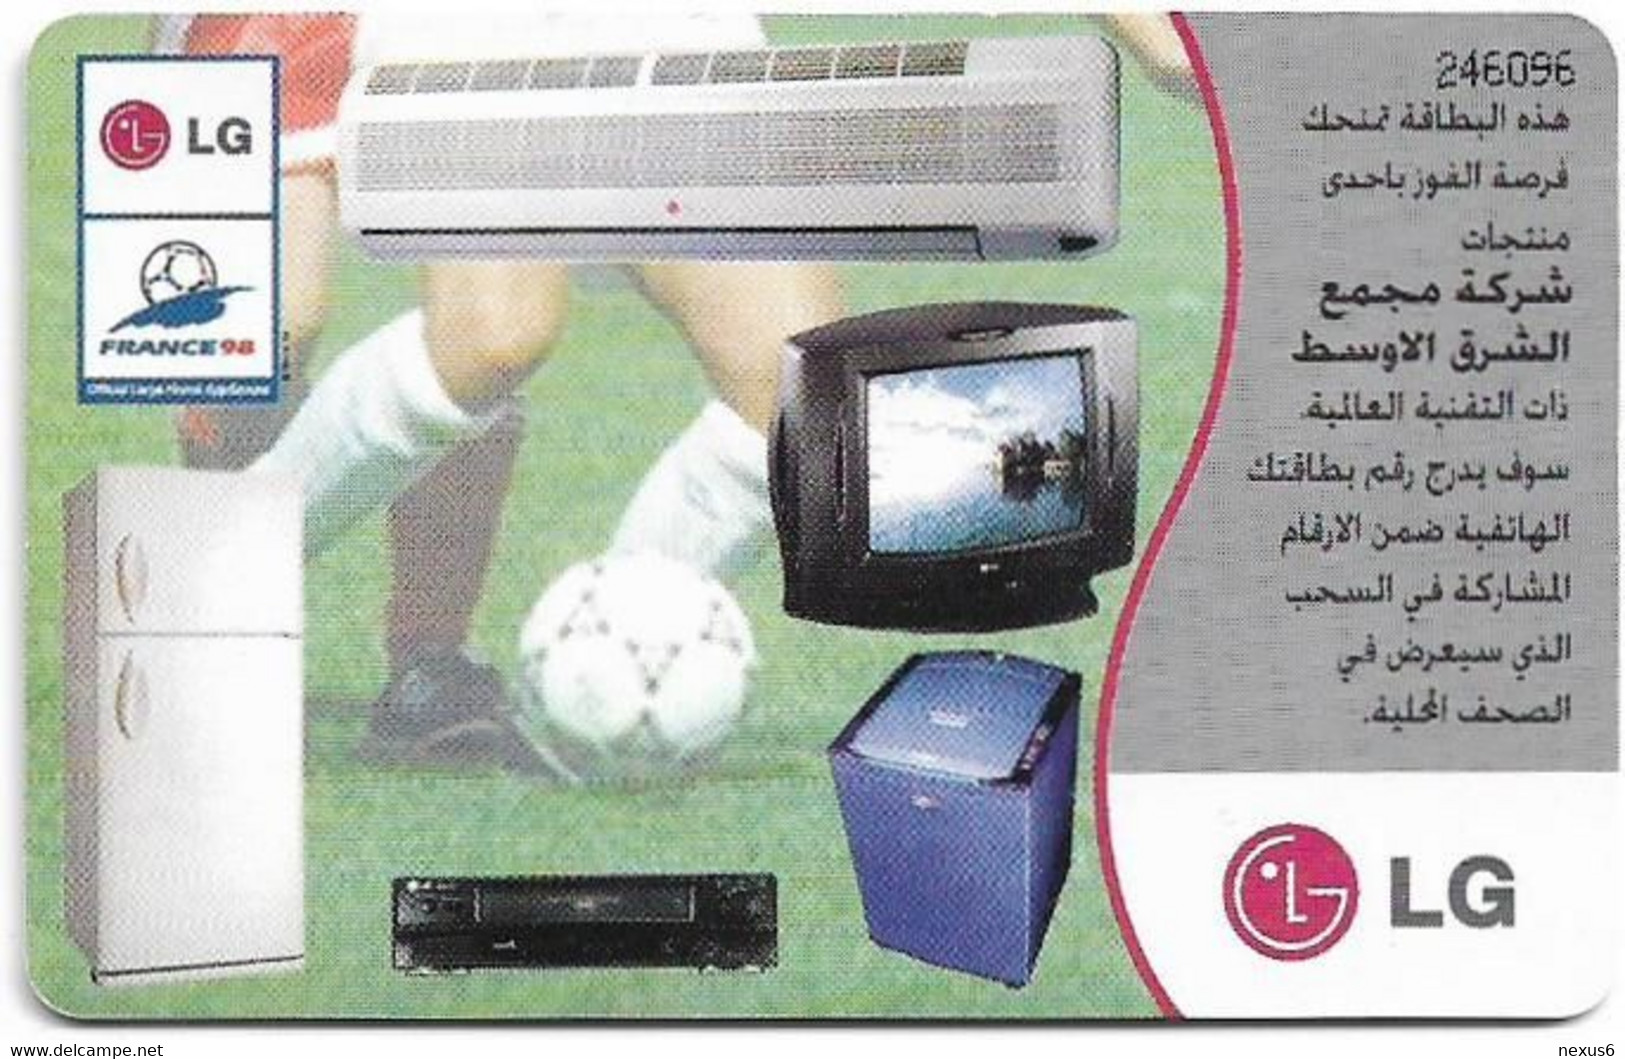 Jordan - Alo - Opel Car, Football And Applicances, 05.1998, 300.000ex, Used - Jordan